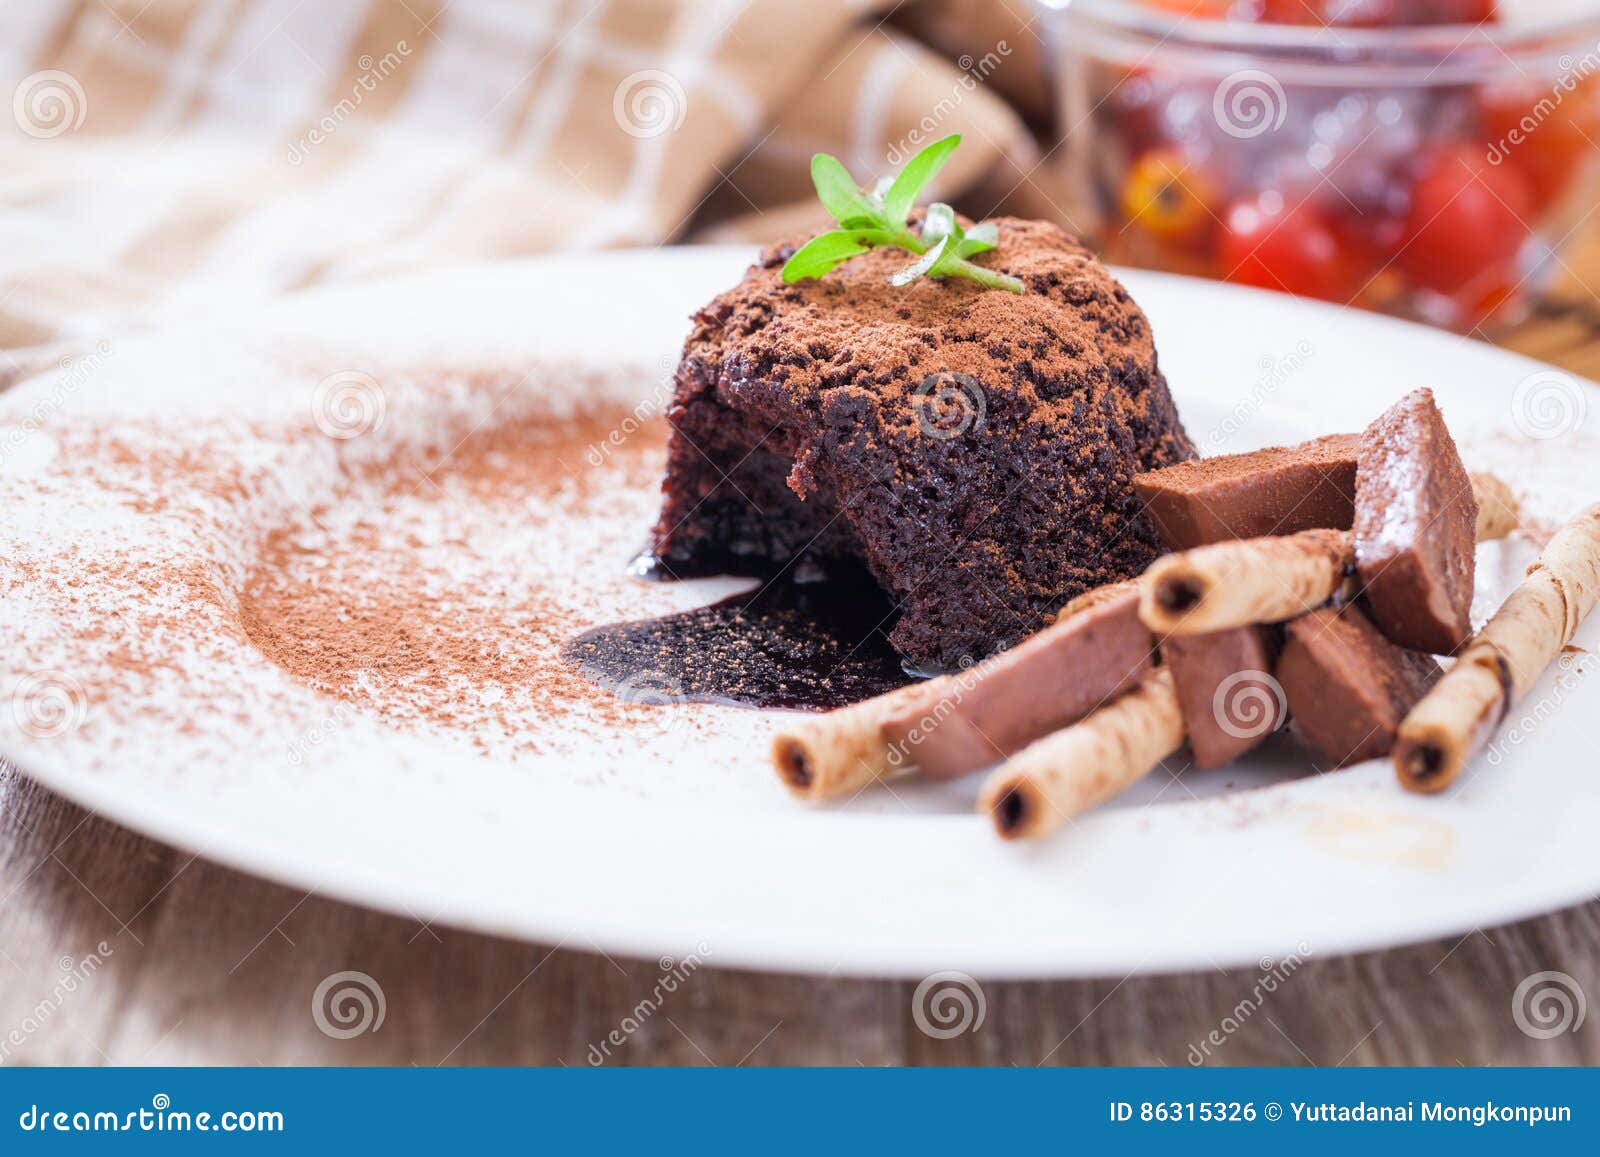 全家🍫巧克力熔岩蛋糕🍰🍰🍰 - 美食板 | Dcard